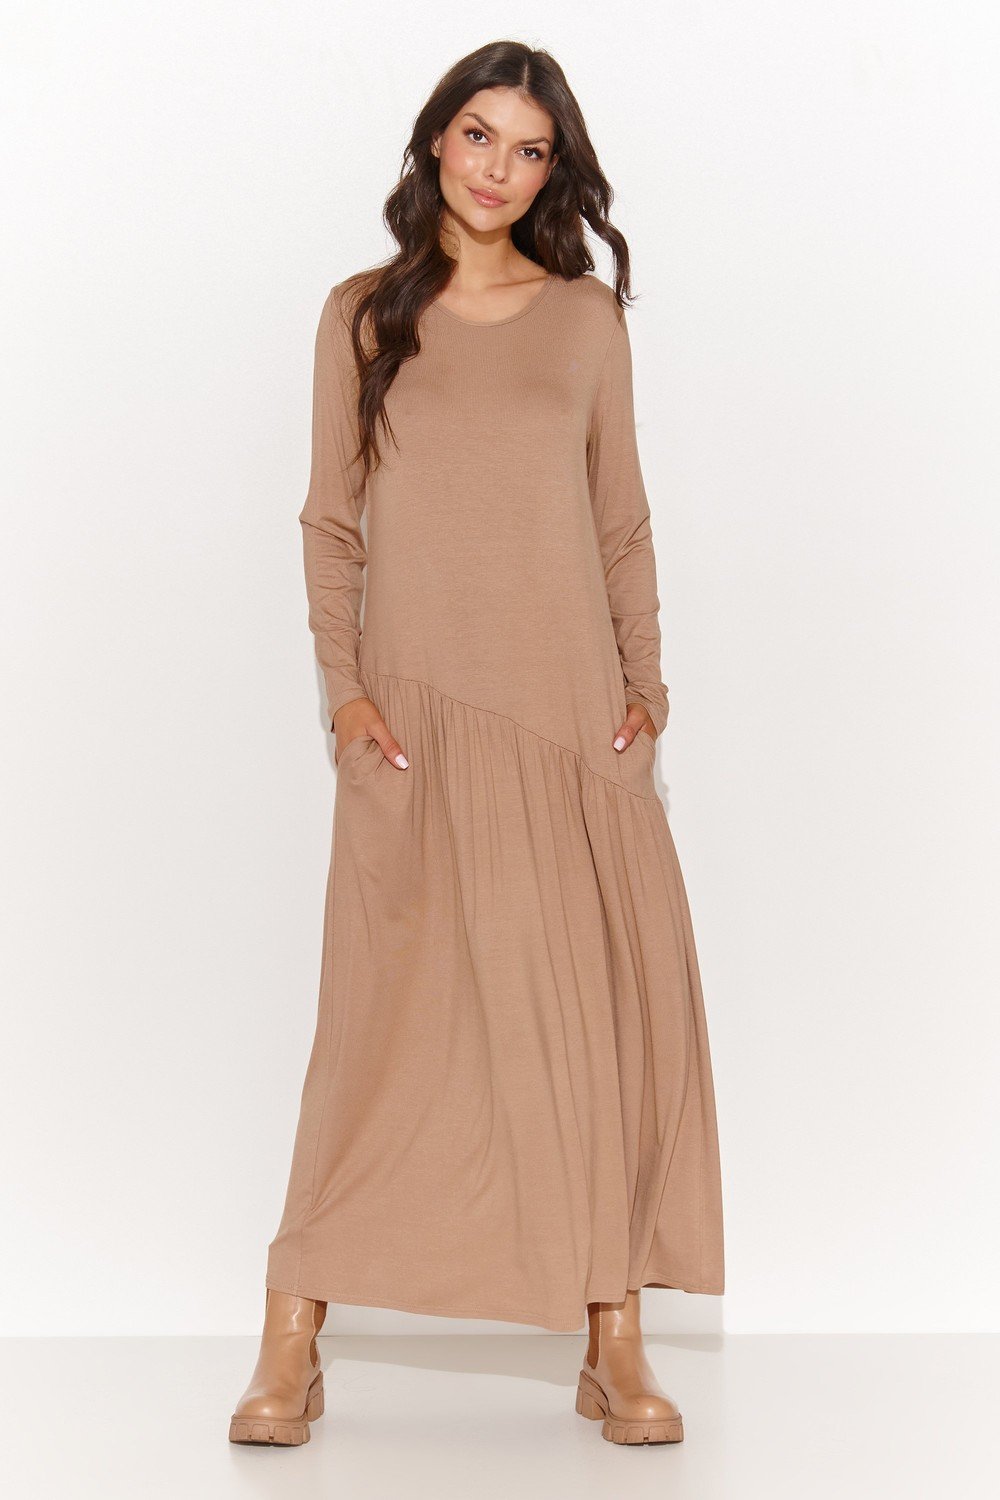 Numinou Woman's Dress Nu456